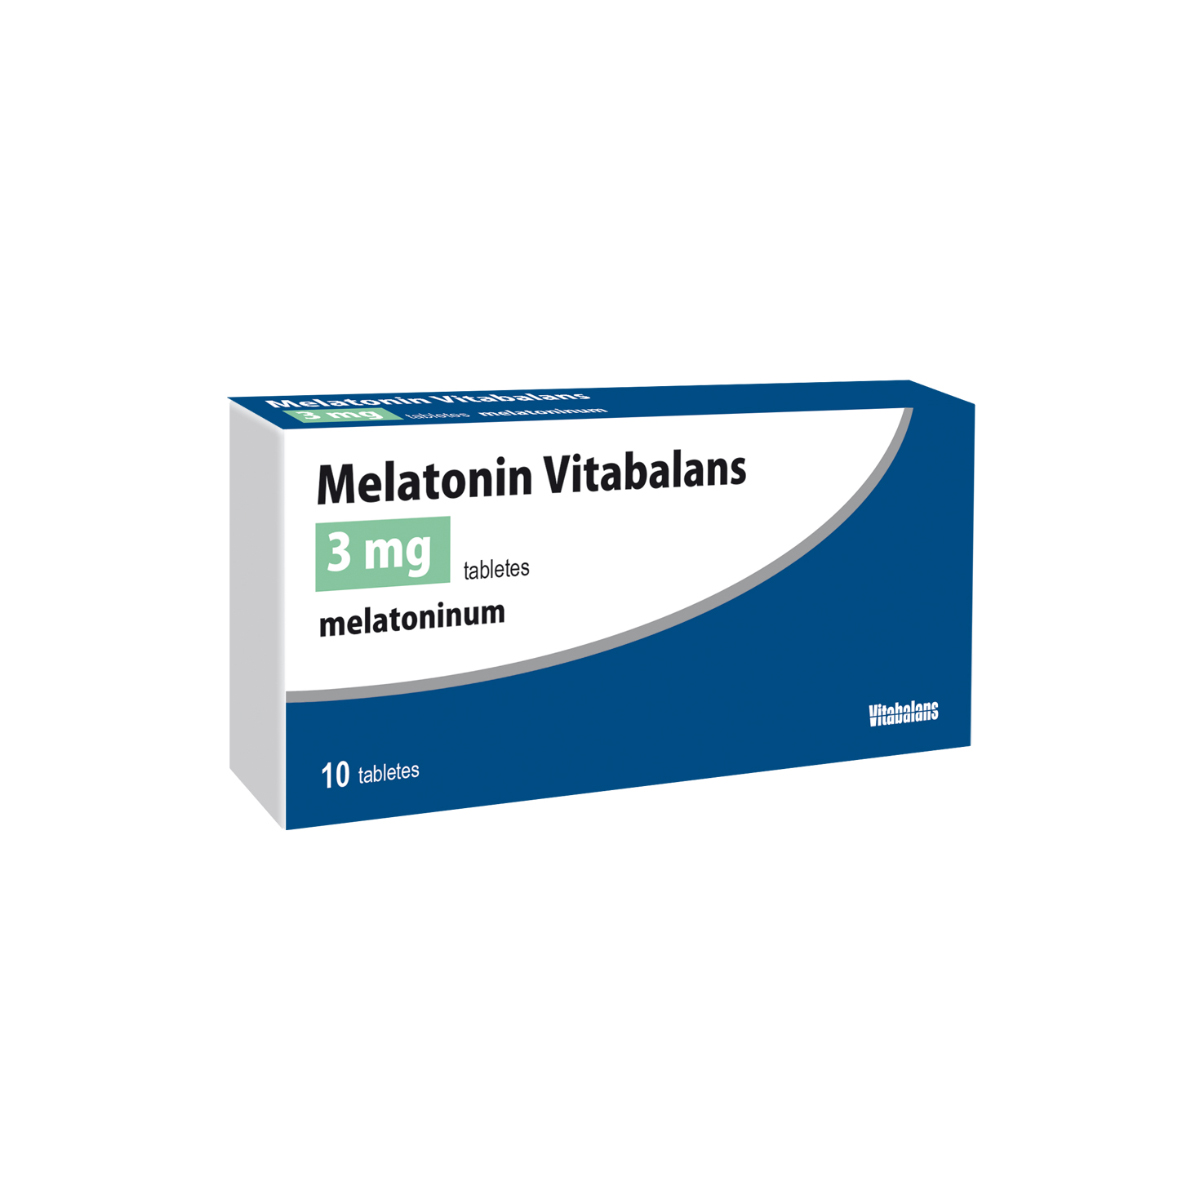 Melatonin Vitabalans 3 mg and 5 mg tablets - Vitabalans Oy